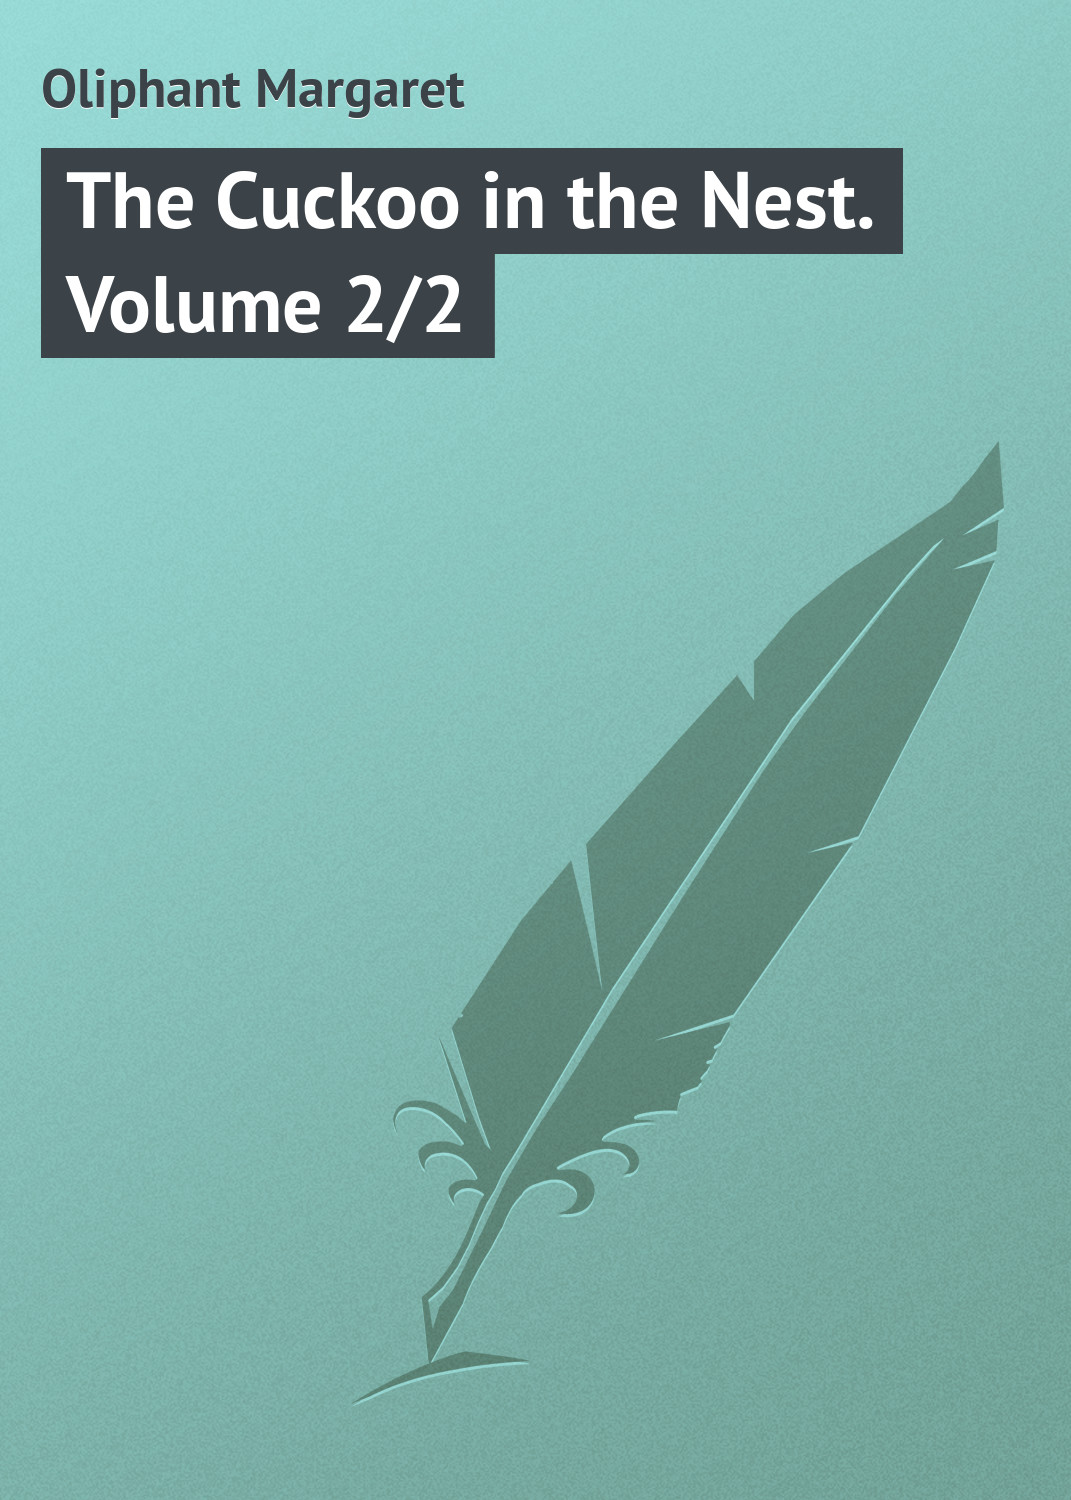 Книга The Cuckoo in the Nest. Volume 2/2 из серии , созданная Margaret Oliphant, может относится к жанру Зарубежная классика, Иностранные языки. Стоимость электронной книги The Cuckoo in the Nest. Volume 2/2 с идентификатором 23145819 составляет 5.99 руб.